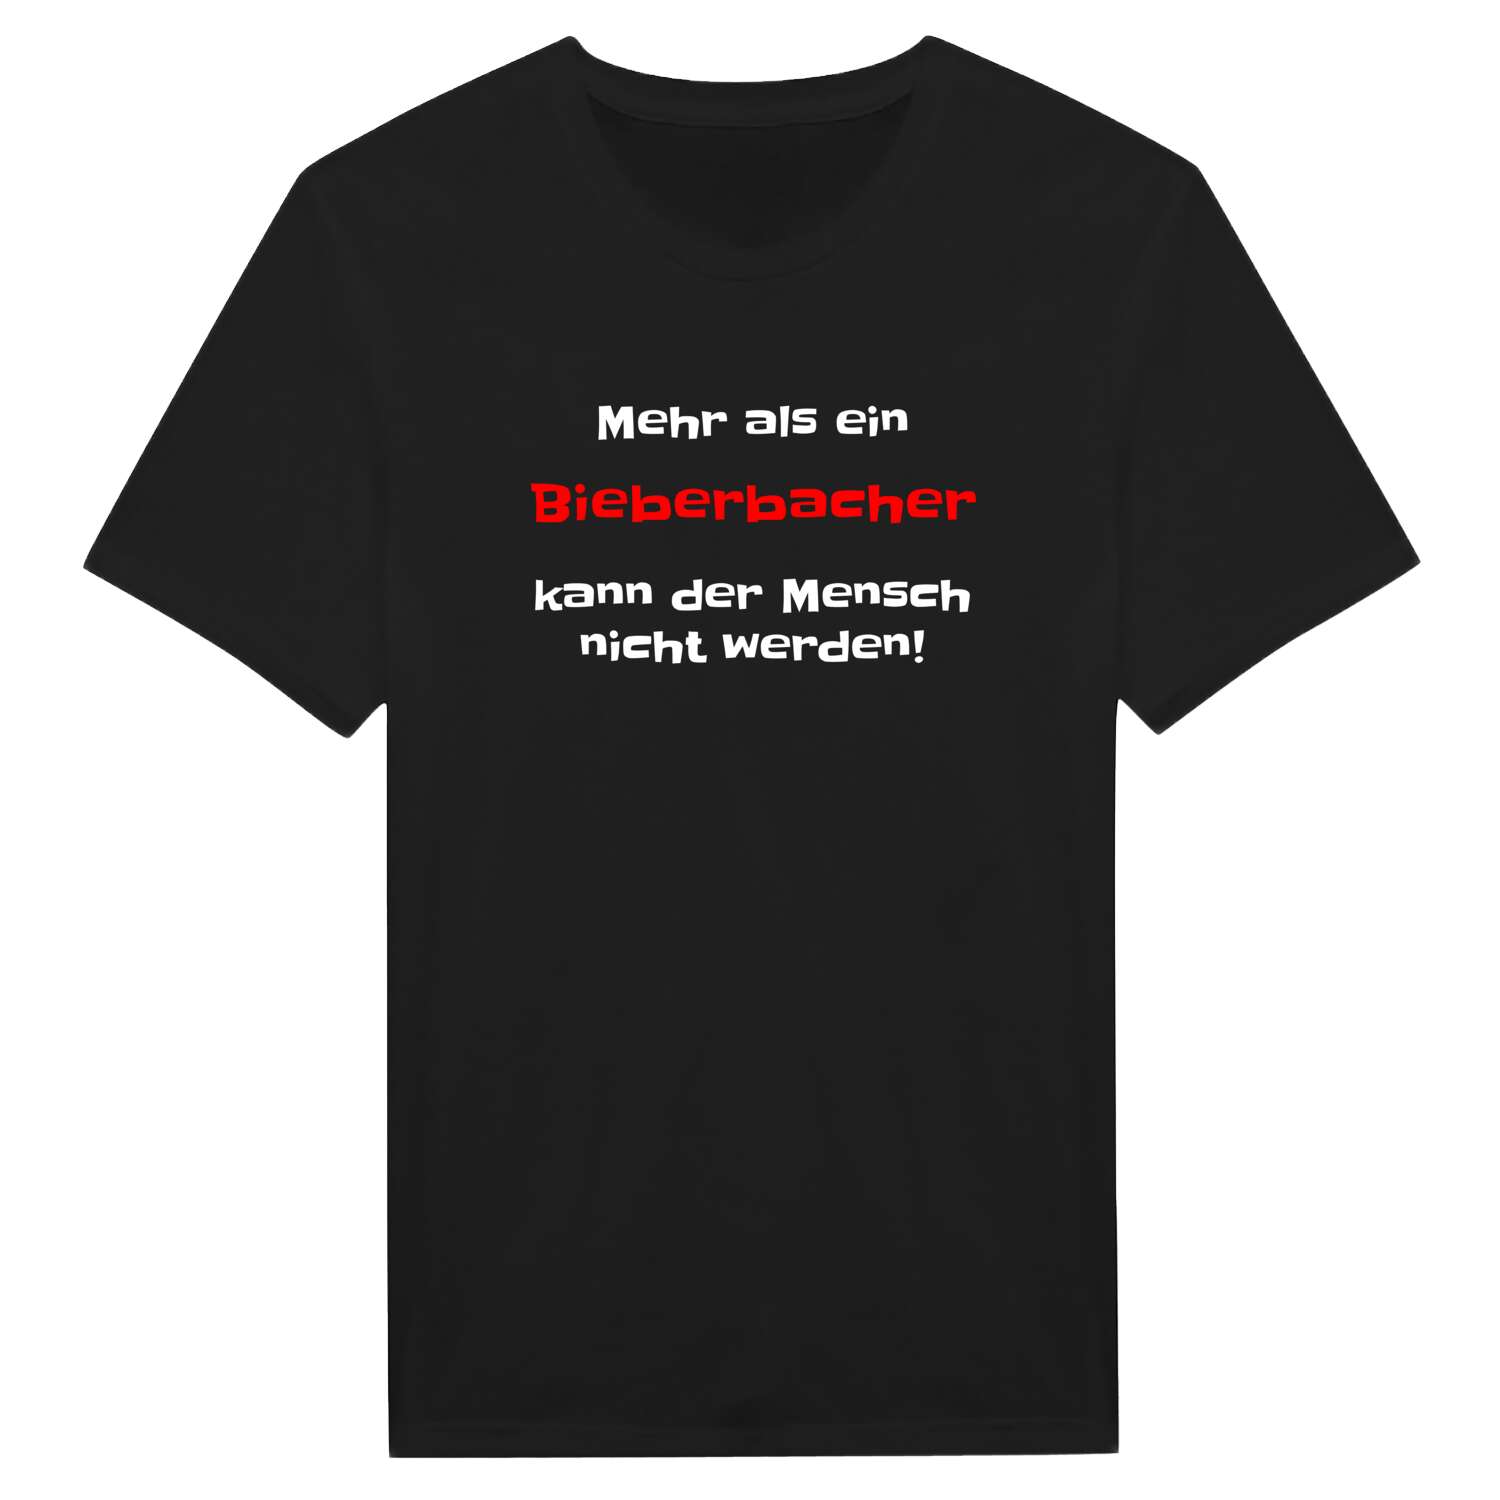 Bieberbach T-Shirt »Mehr als ein«